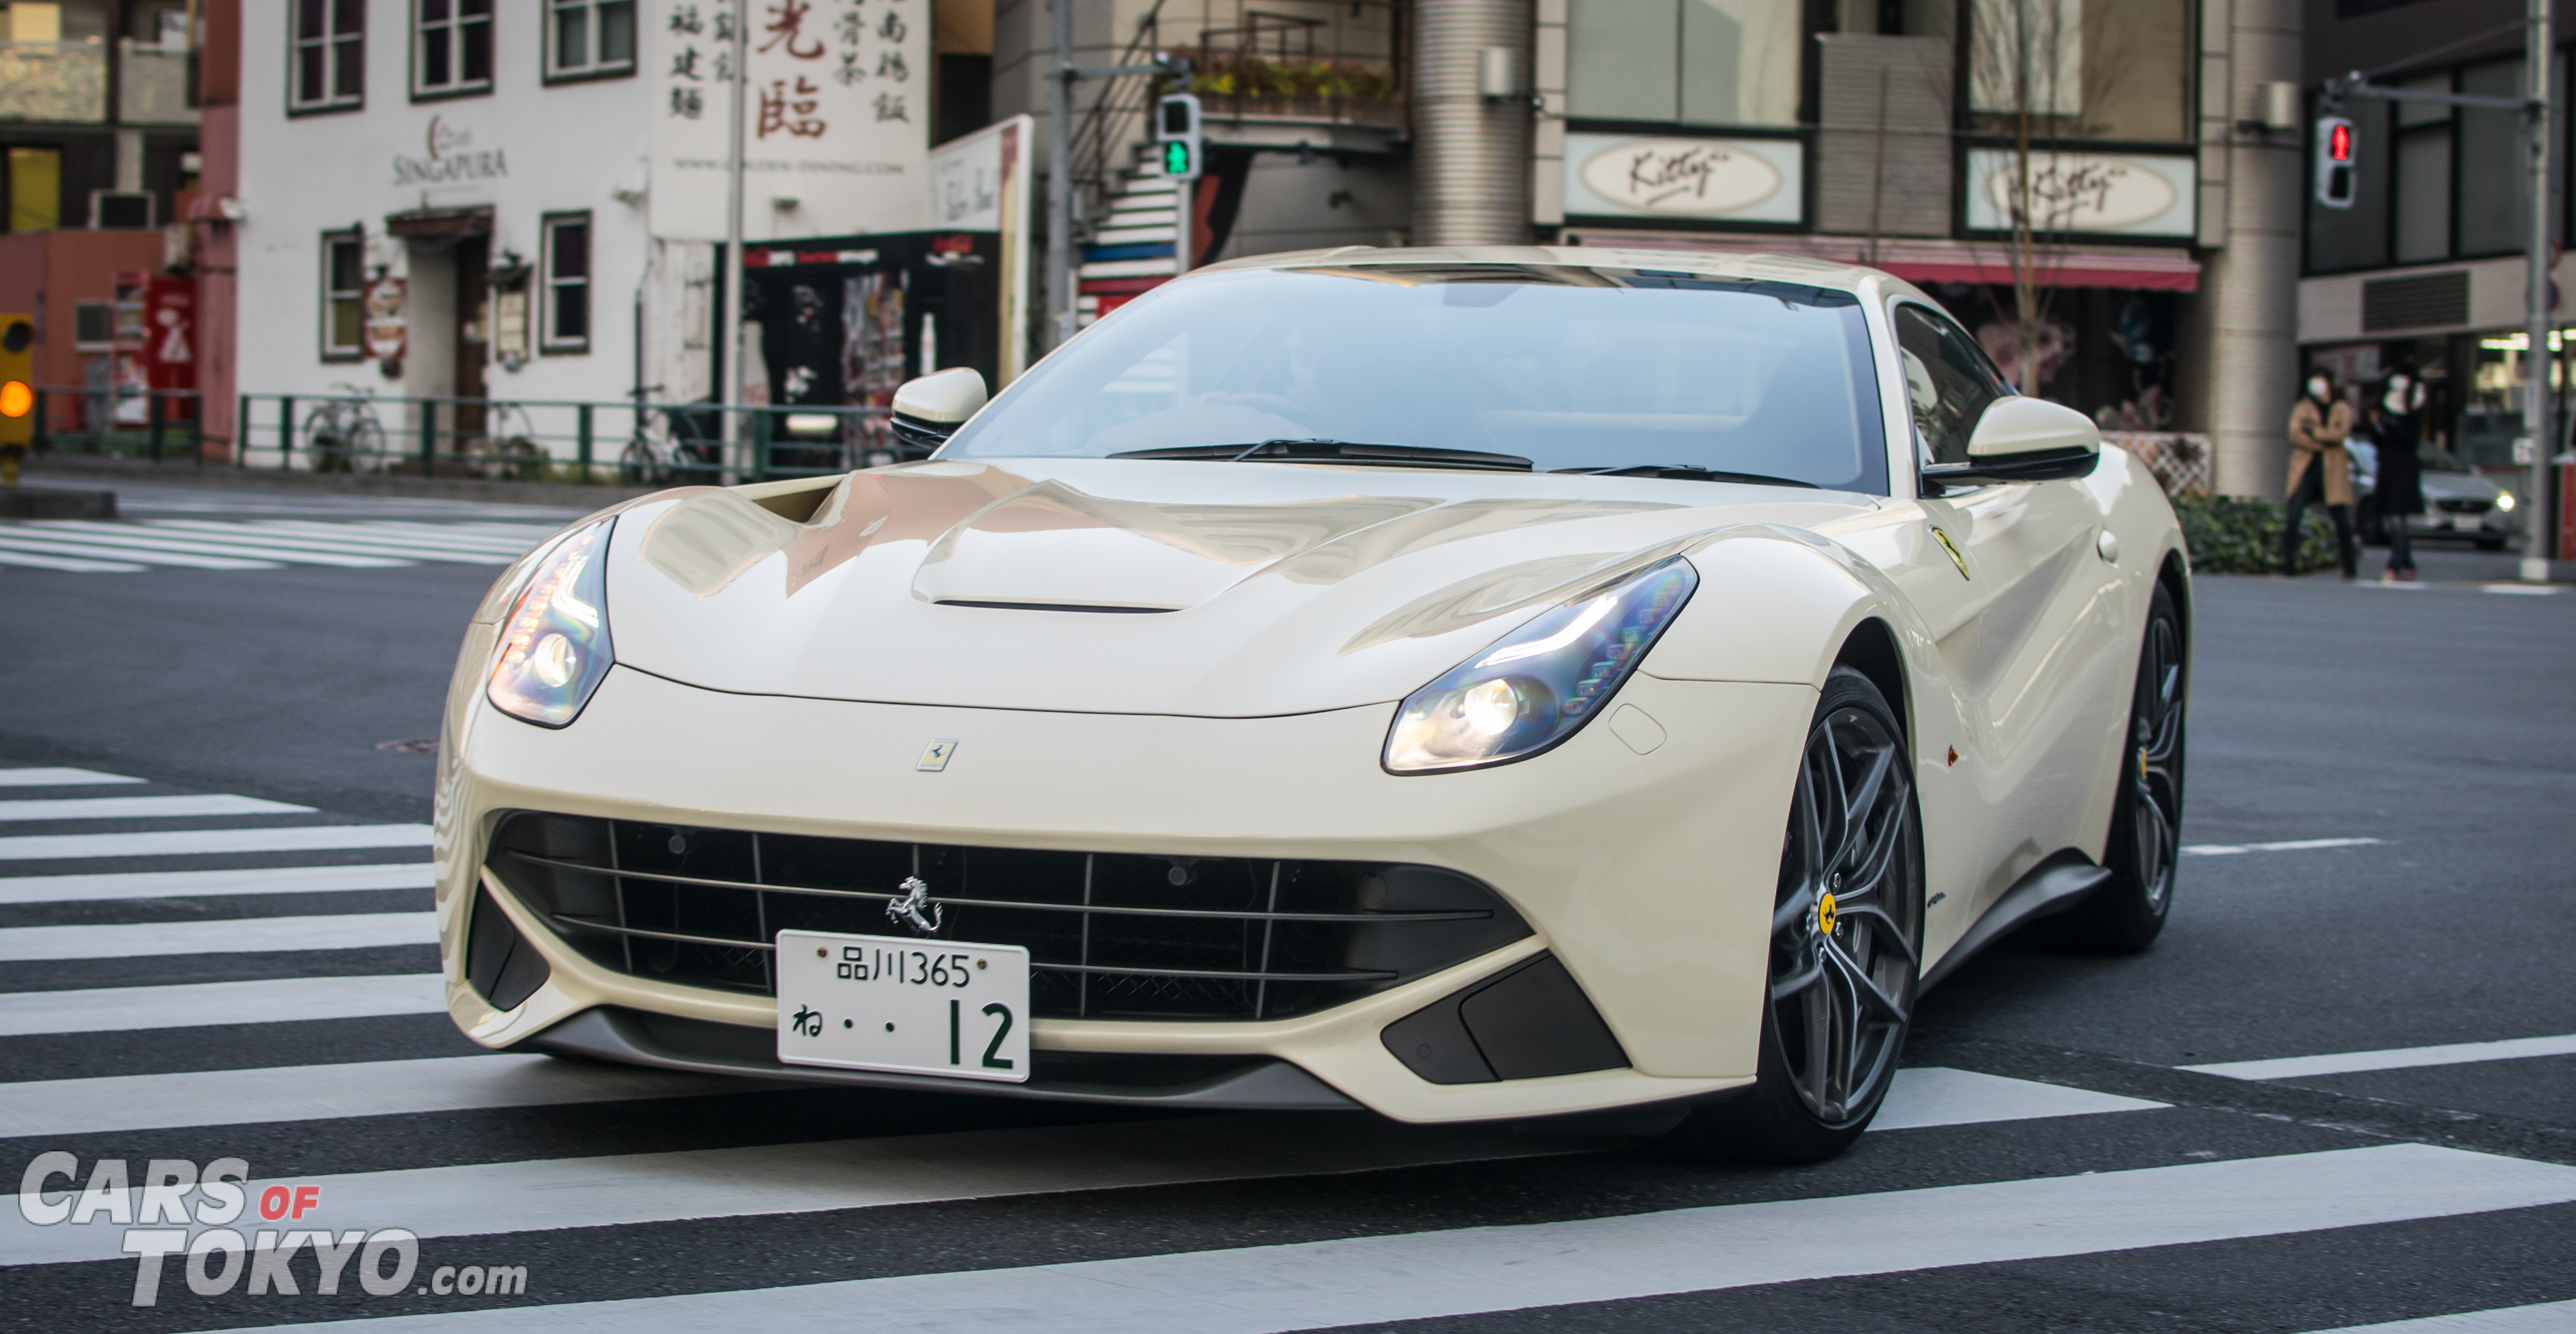 Cars of Tokyo Unusual Spec Ferrari F12 Cream